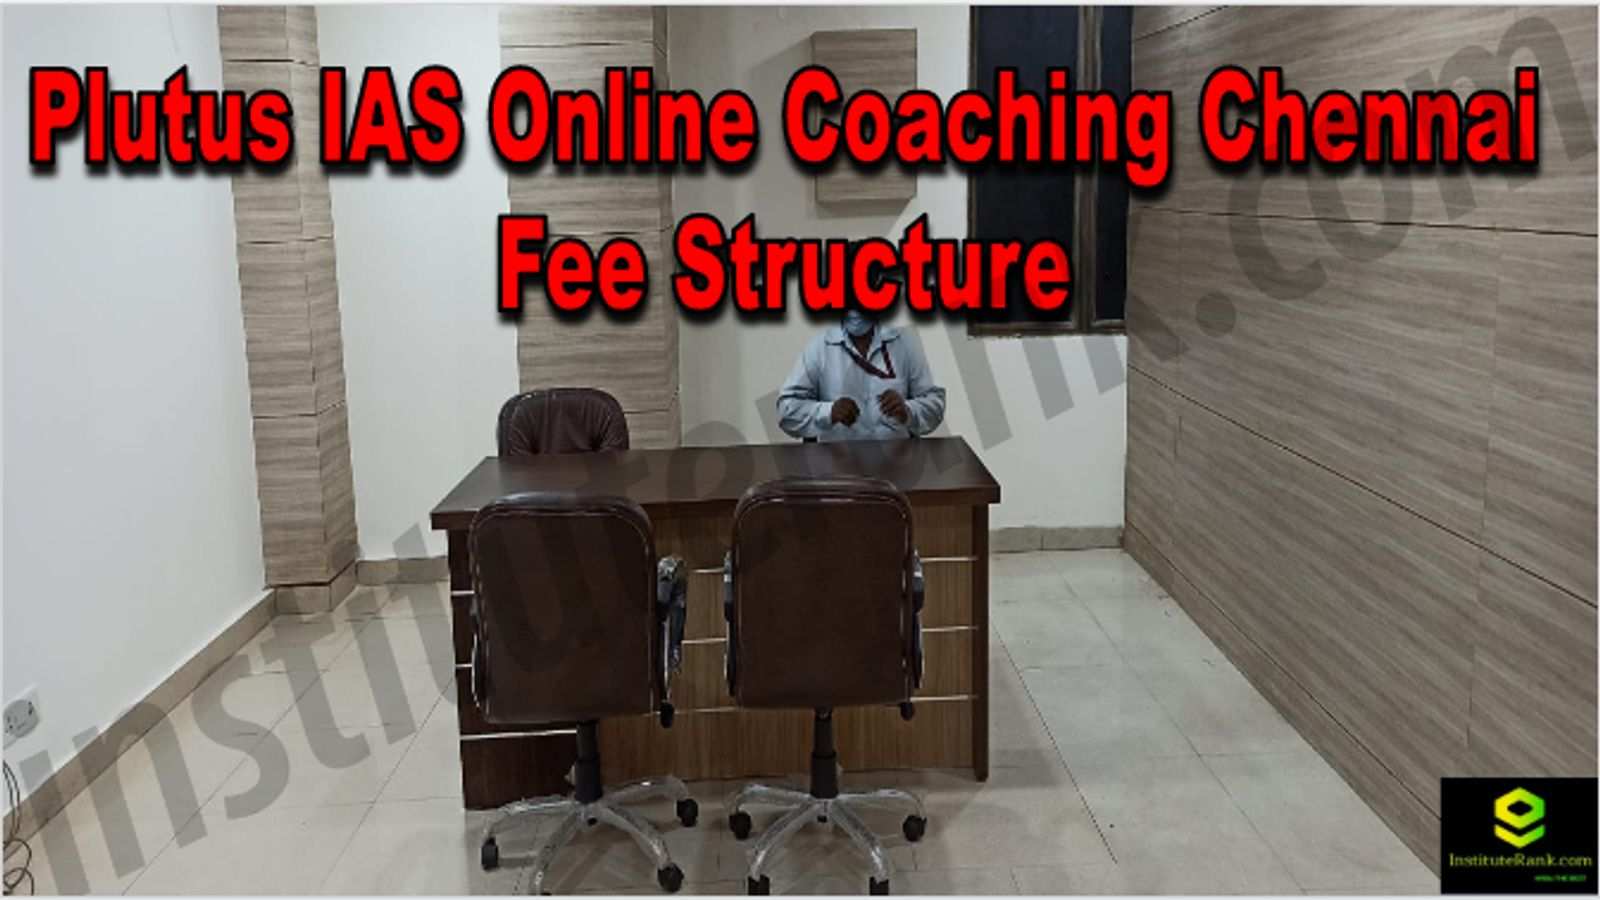 Plutus IAS Online Coaching Chennai Reviews Fee Structure